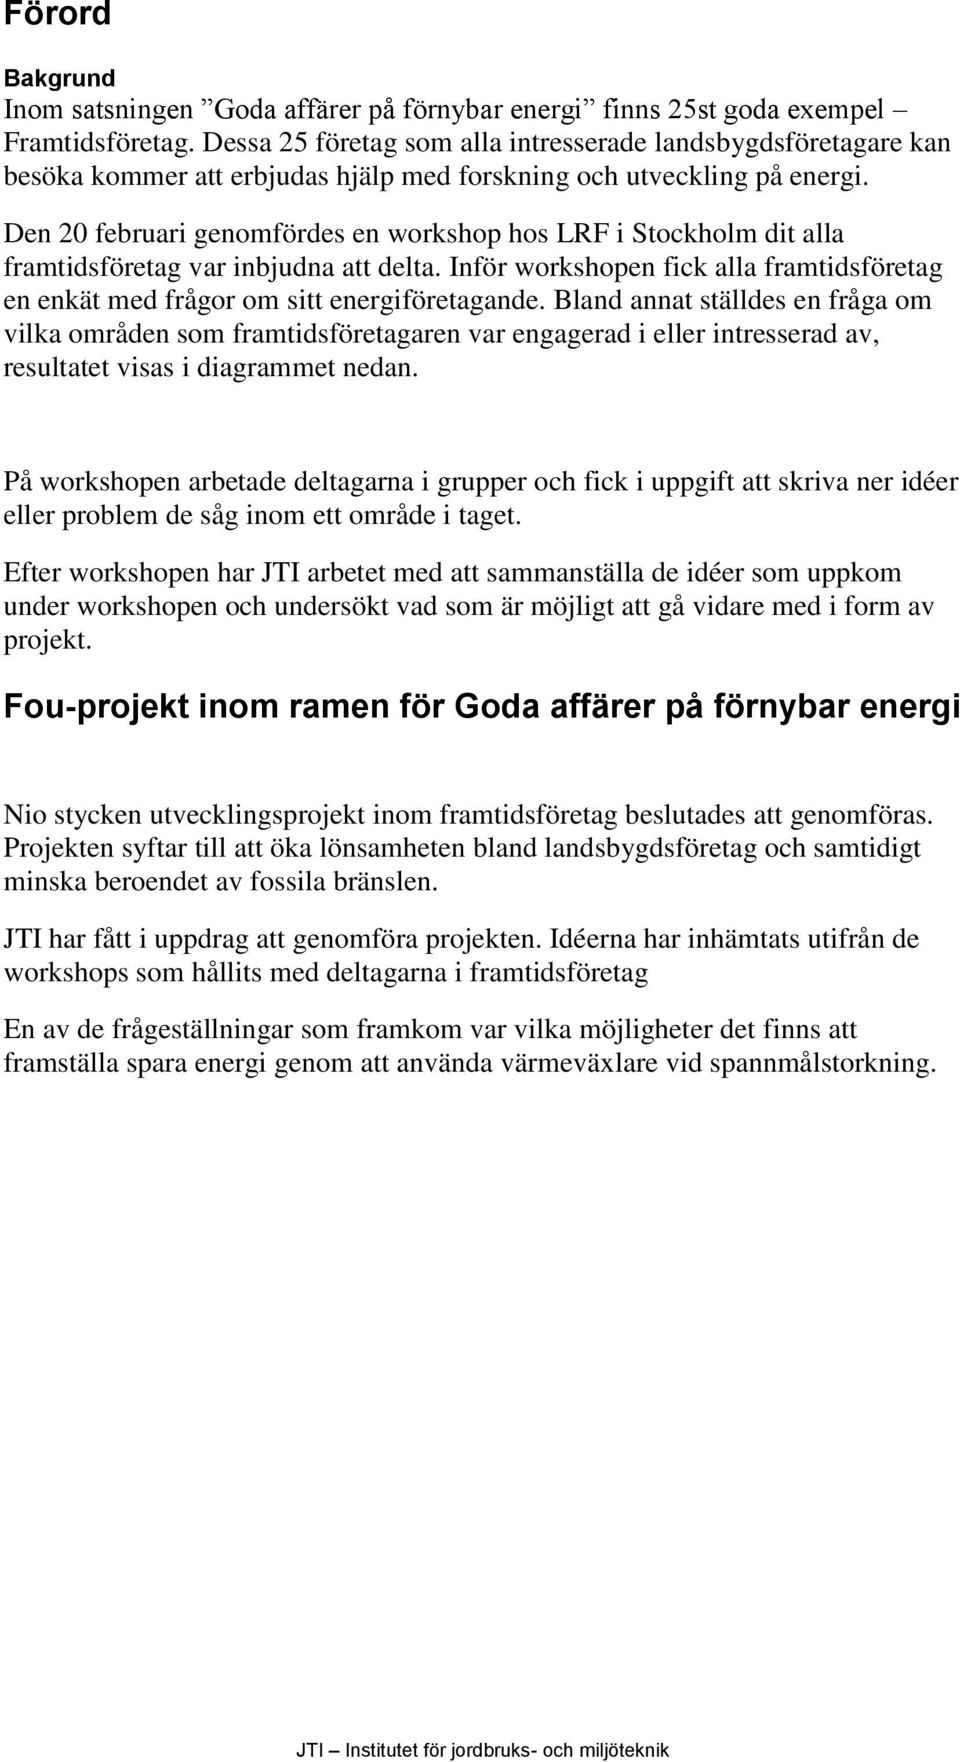 Den 20 februari genomfördes en workshop hos LRF i Stockholm dit alla framtidsföretag var inbjudna att delta. Inför workshopen fick alla framtidsföretag en enkät med frågor om sitt energiföretagande.